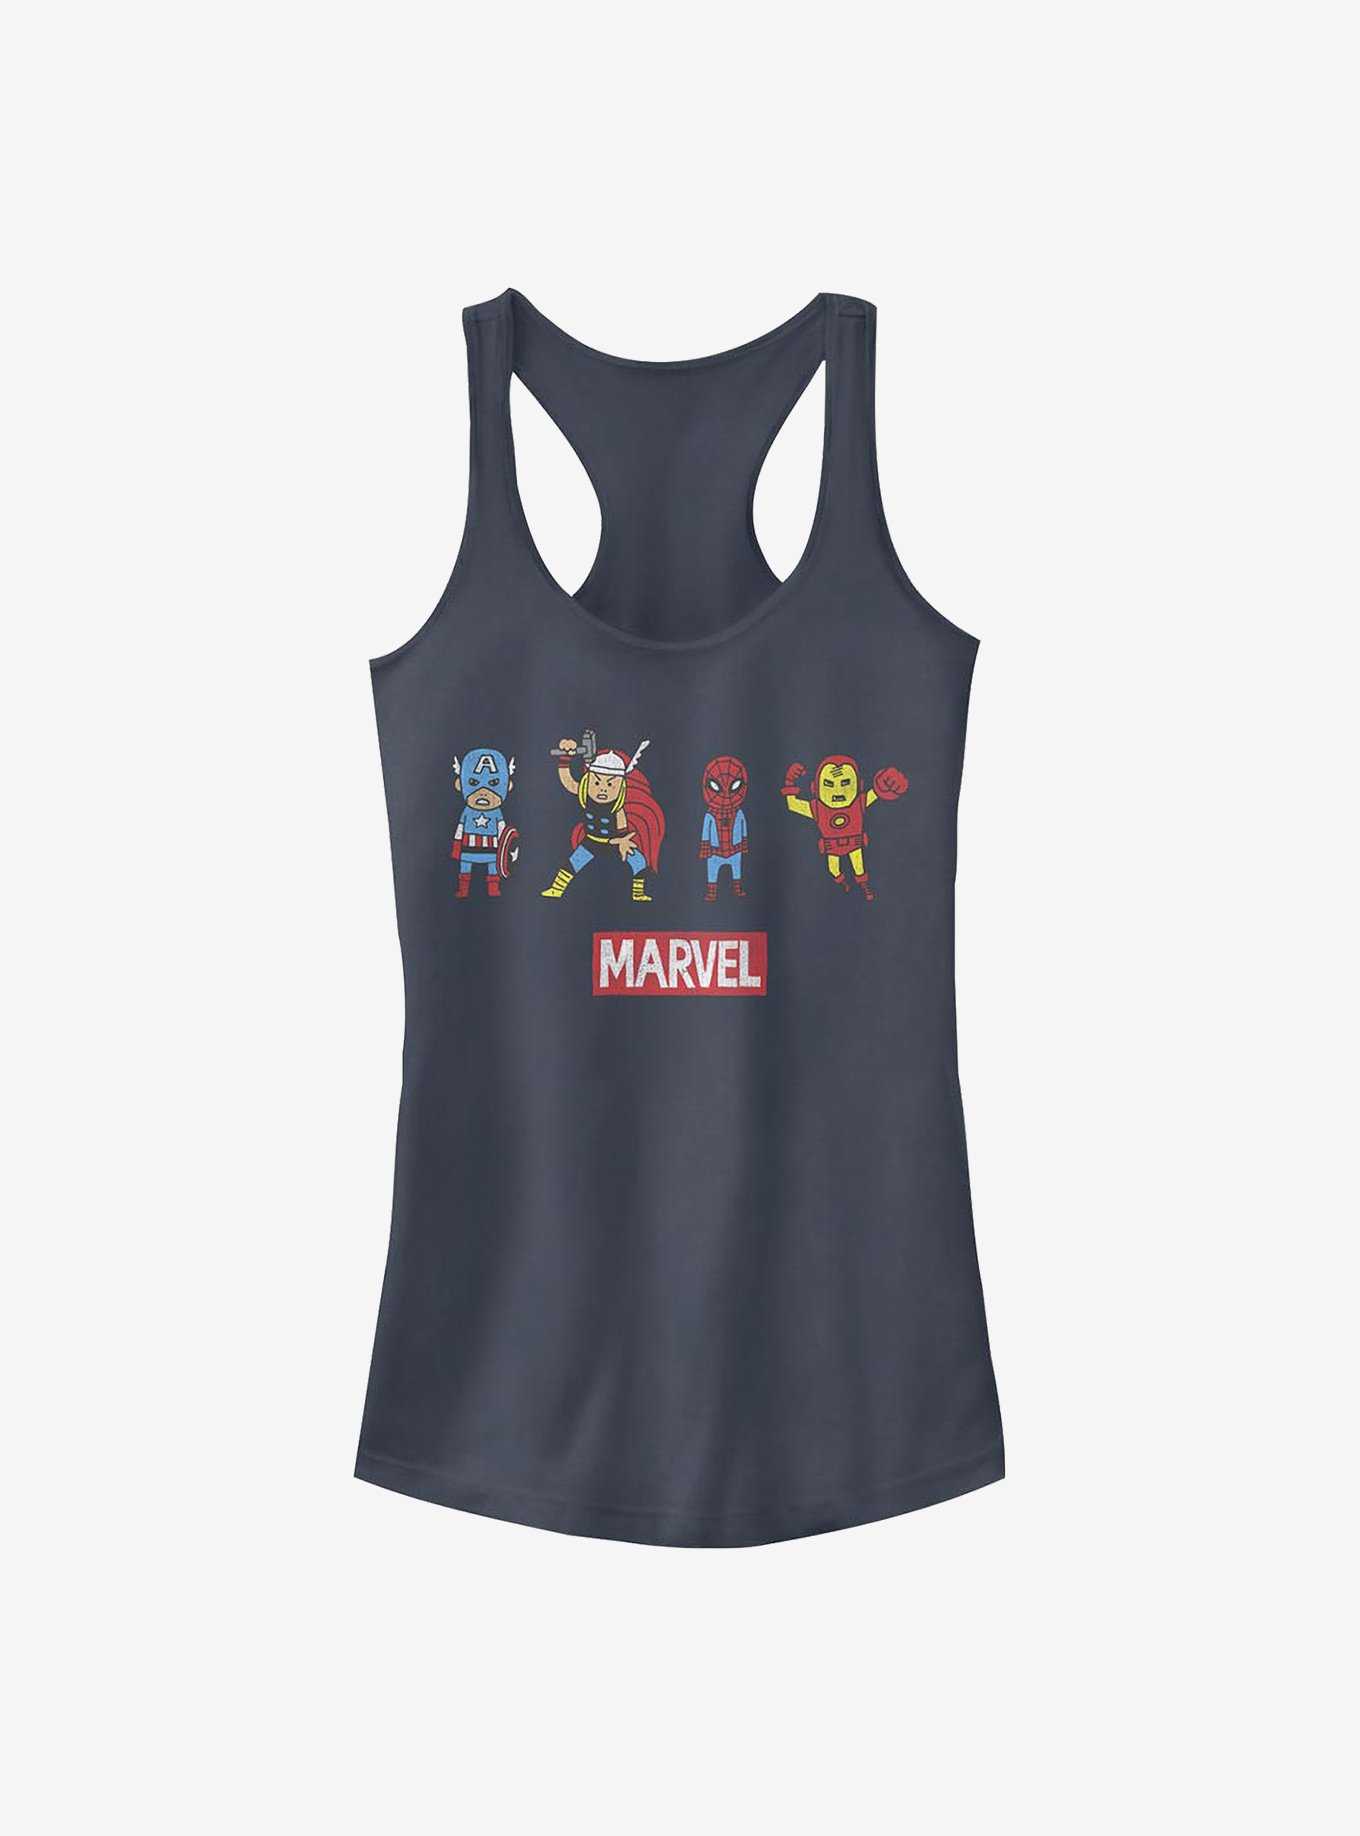 Marvel Avengers Pop Art Group Girls Tank, , hi-res